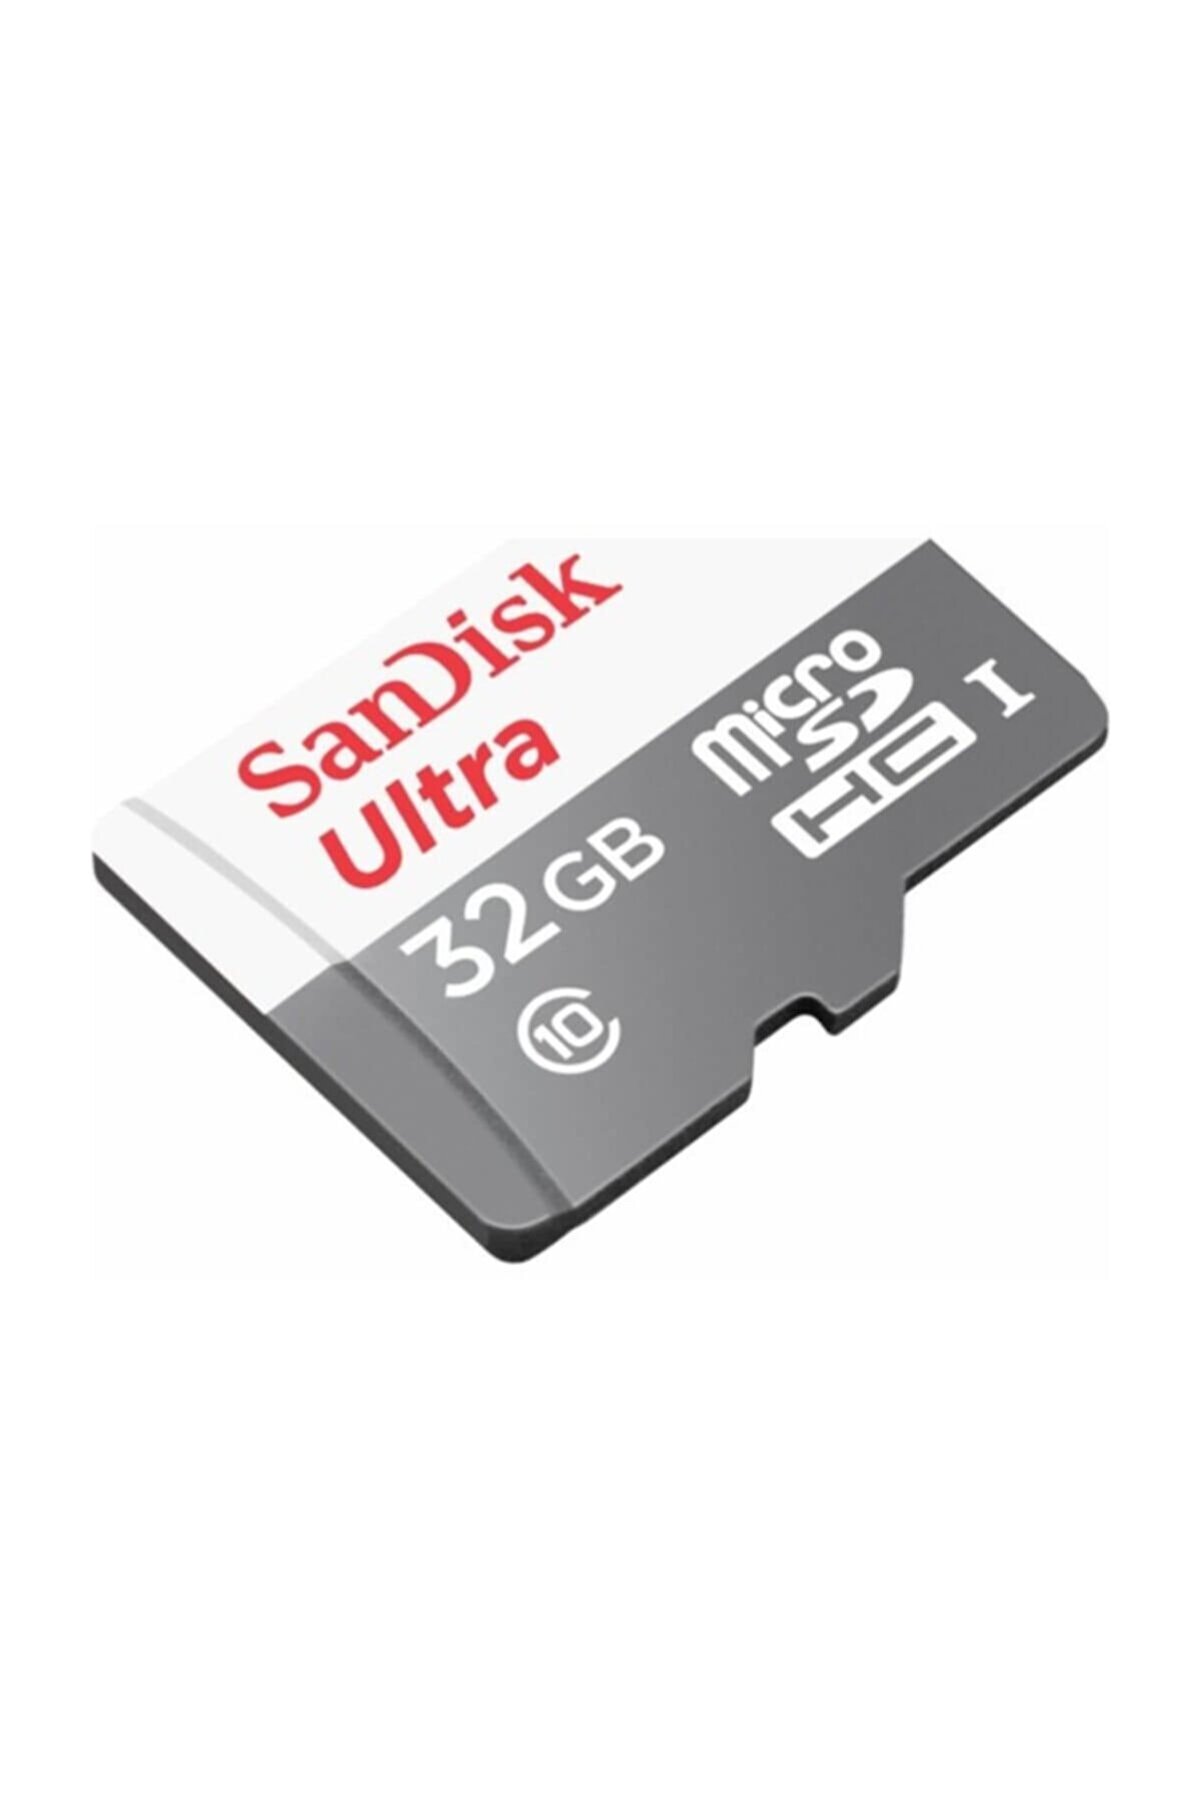 Sandisk Ultra 32GB 80MB/s Micro SD Hafıza Kartı